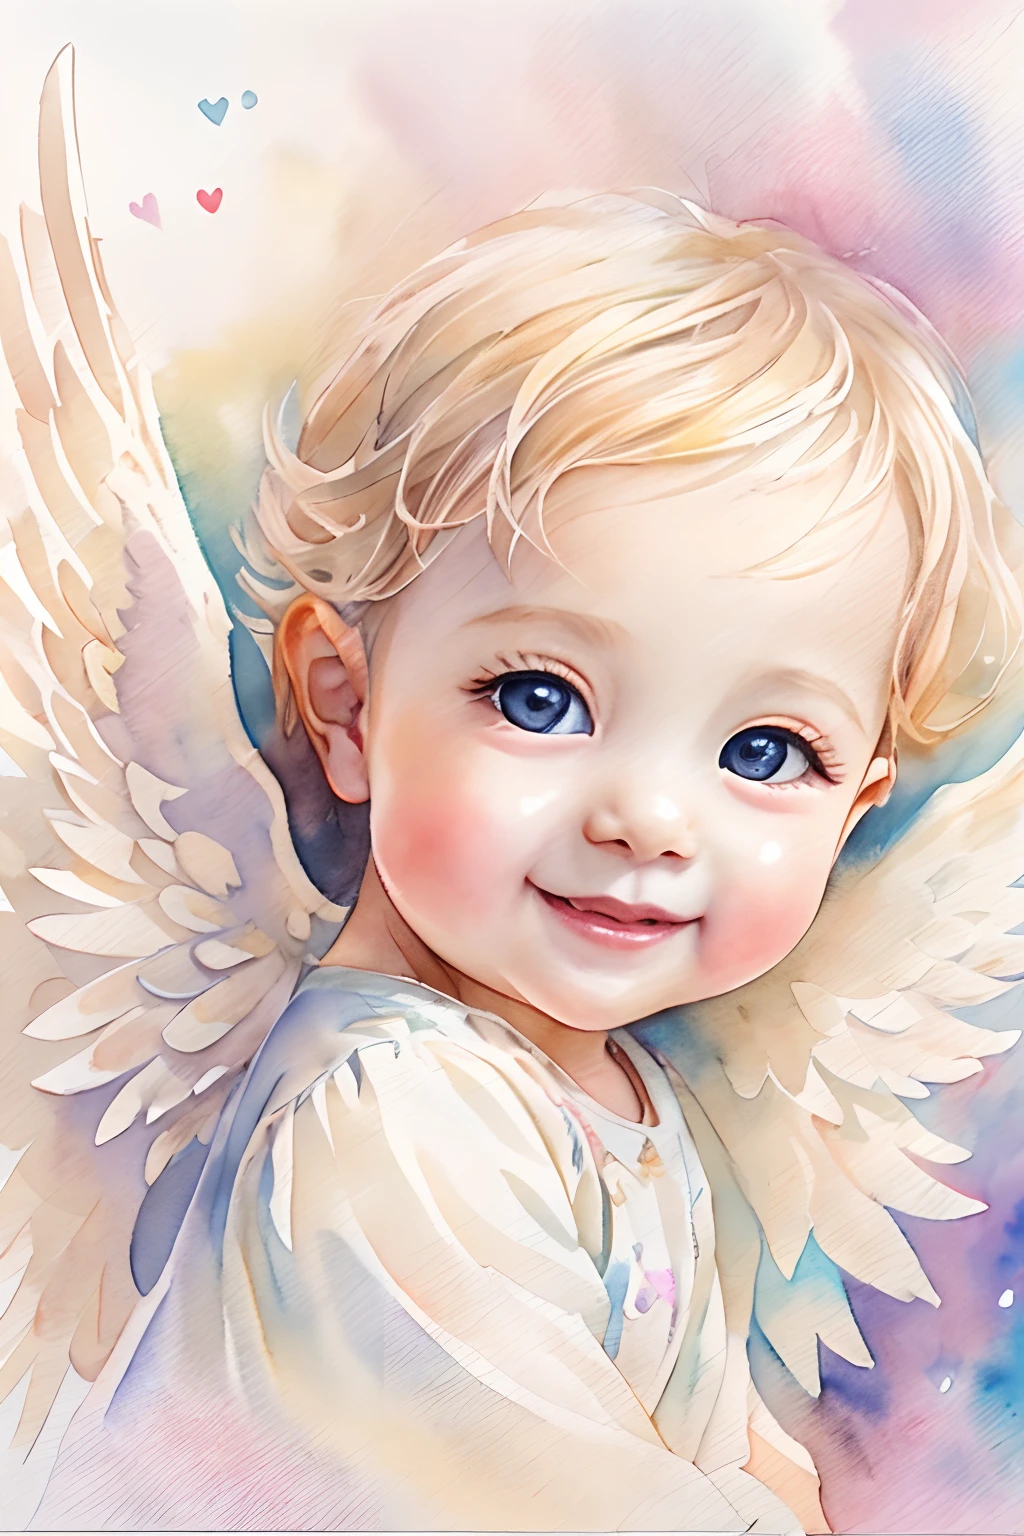 Bendiciones de los ángeles､fondo brillante、marca del corazon、sensibilidad､Una sonrisa、amable､Ángel bebé、pintura de acuarela